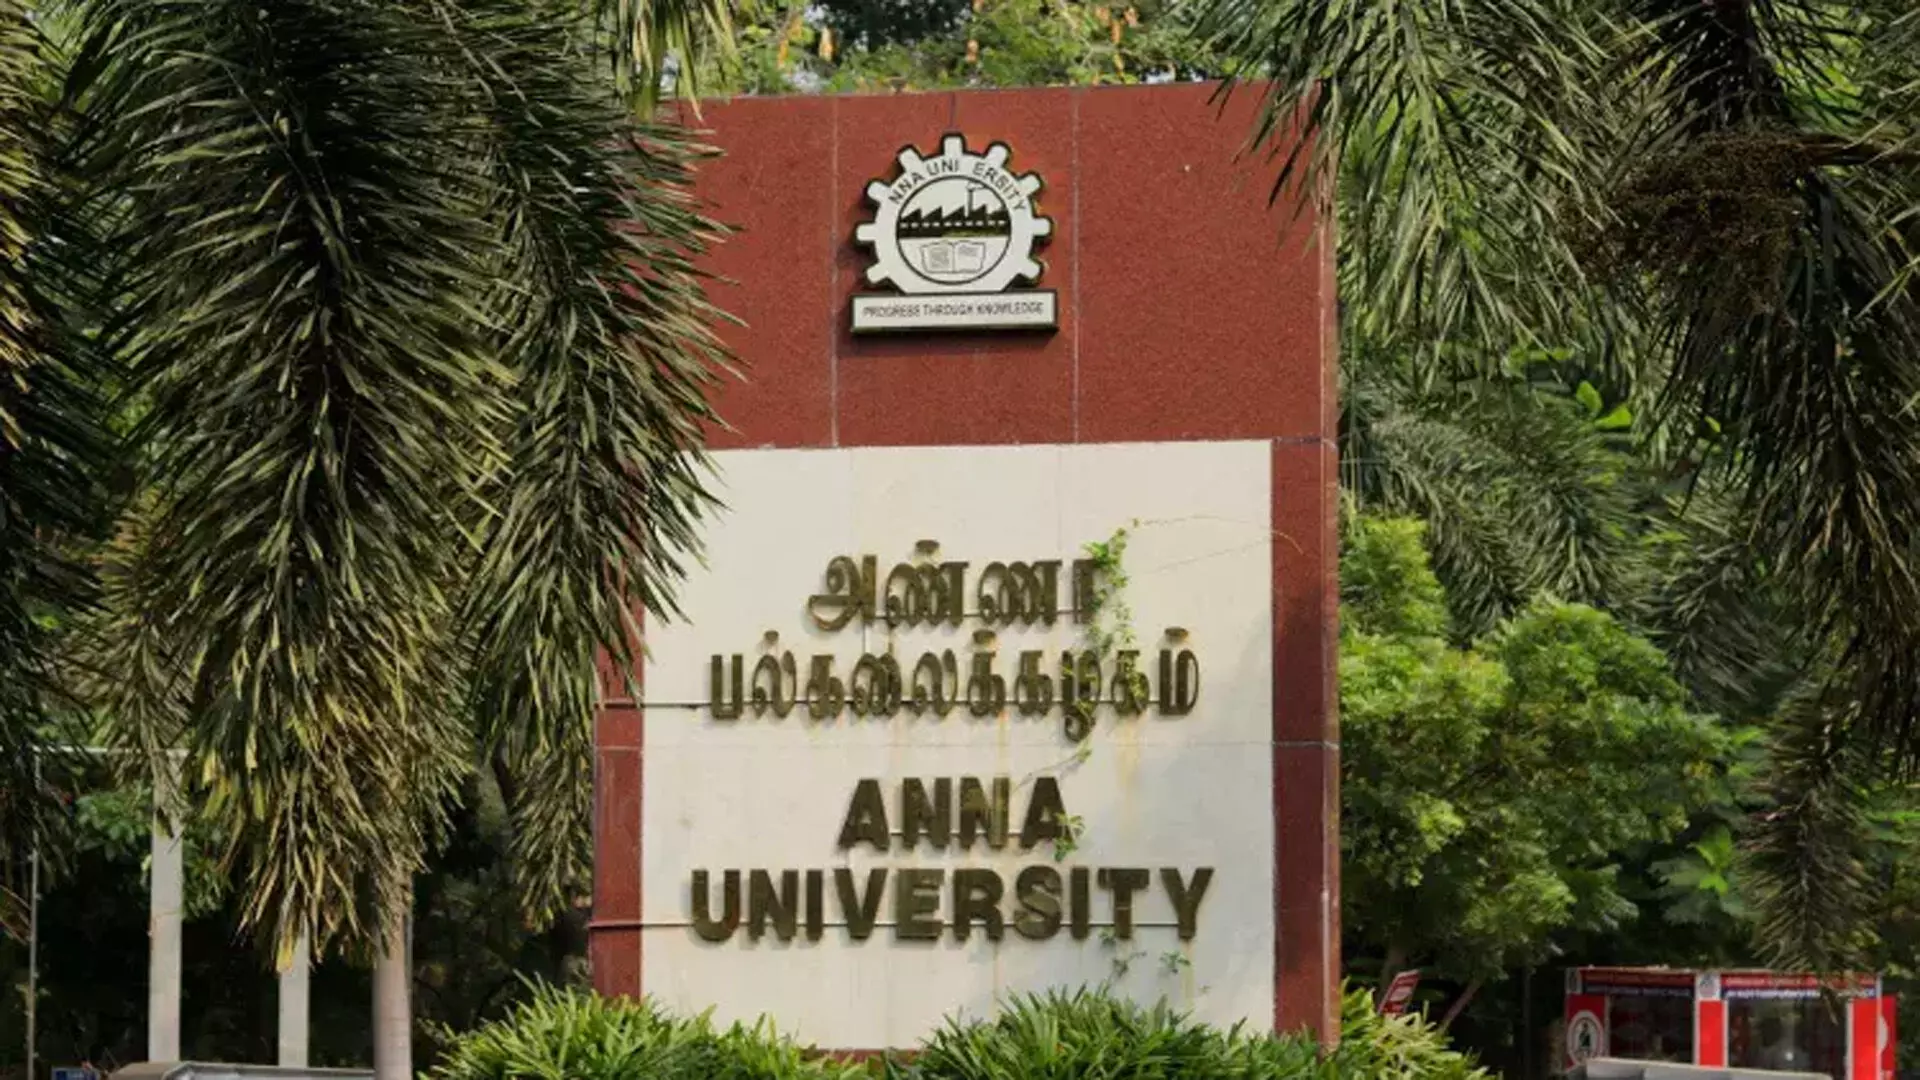 अन्ना विश्वविद्यालय प्रोडक्शन इंजीनियरिंग पर अंतर्राष्ट्रीय बैठक की मेजबानी करेगा